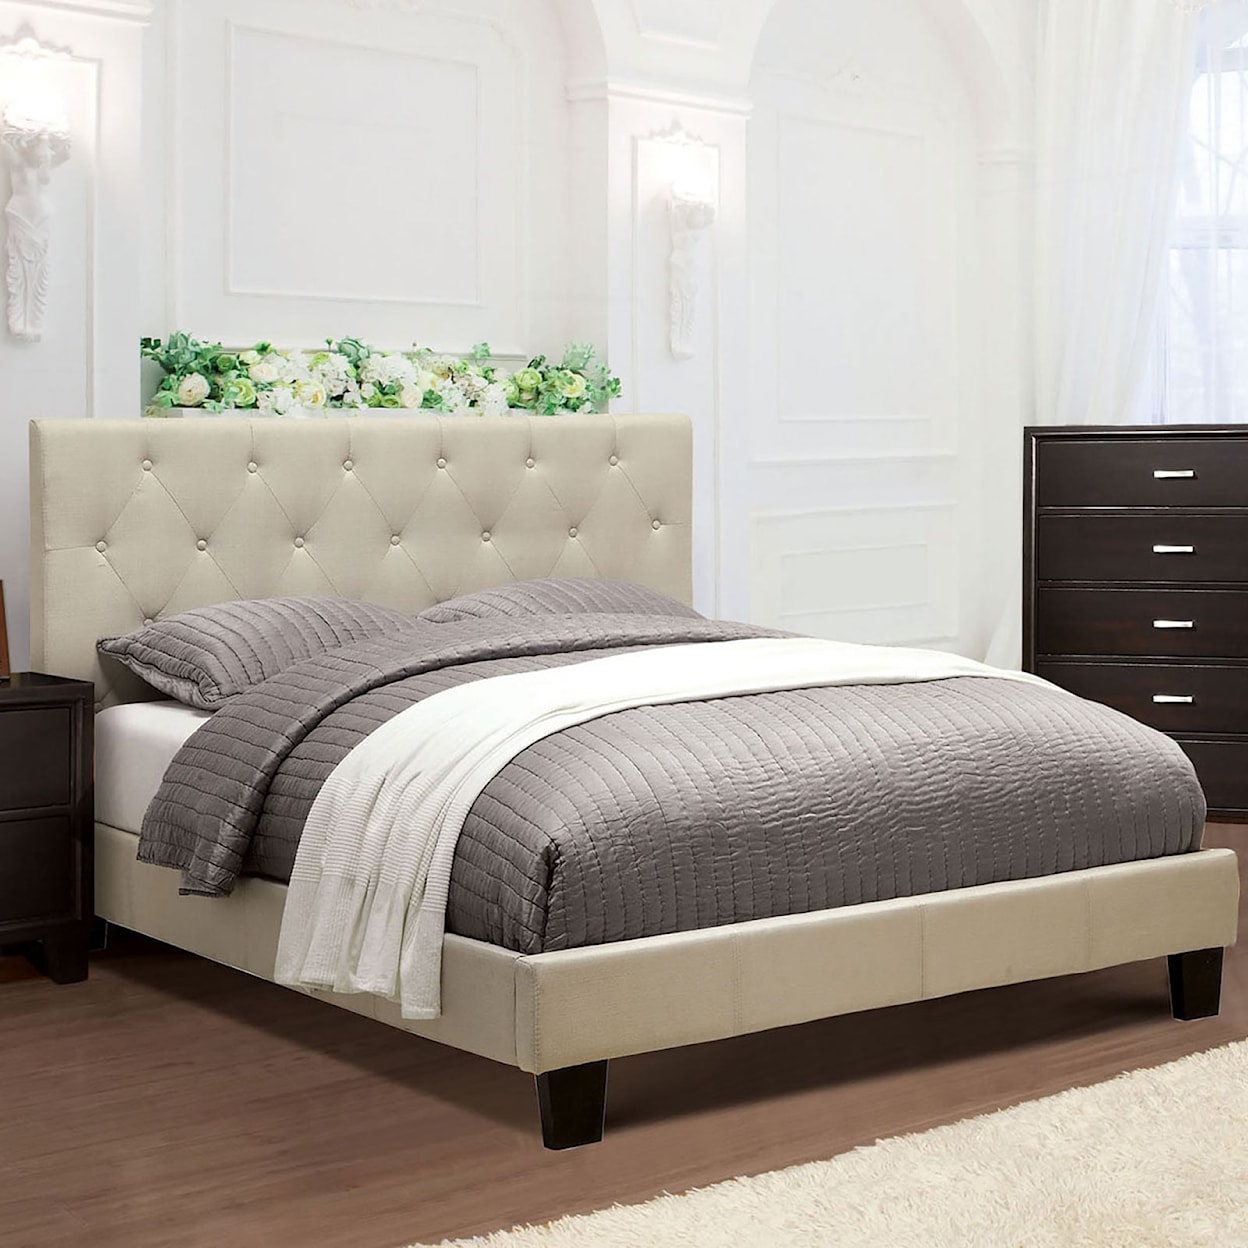 Furniture of America Leeroy Full Bed